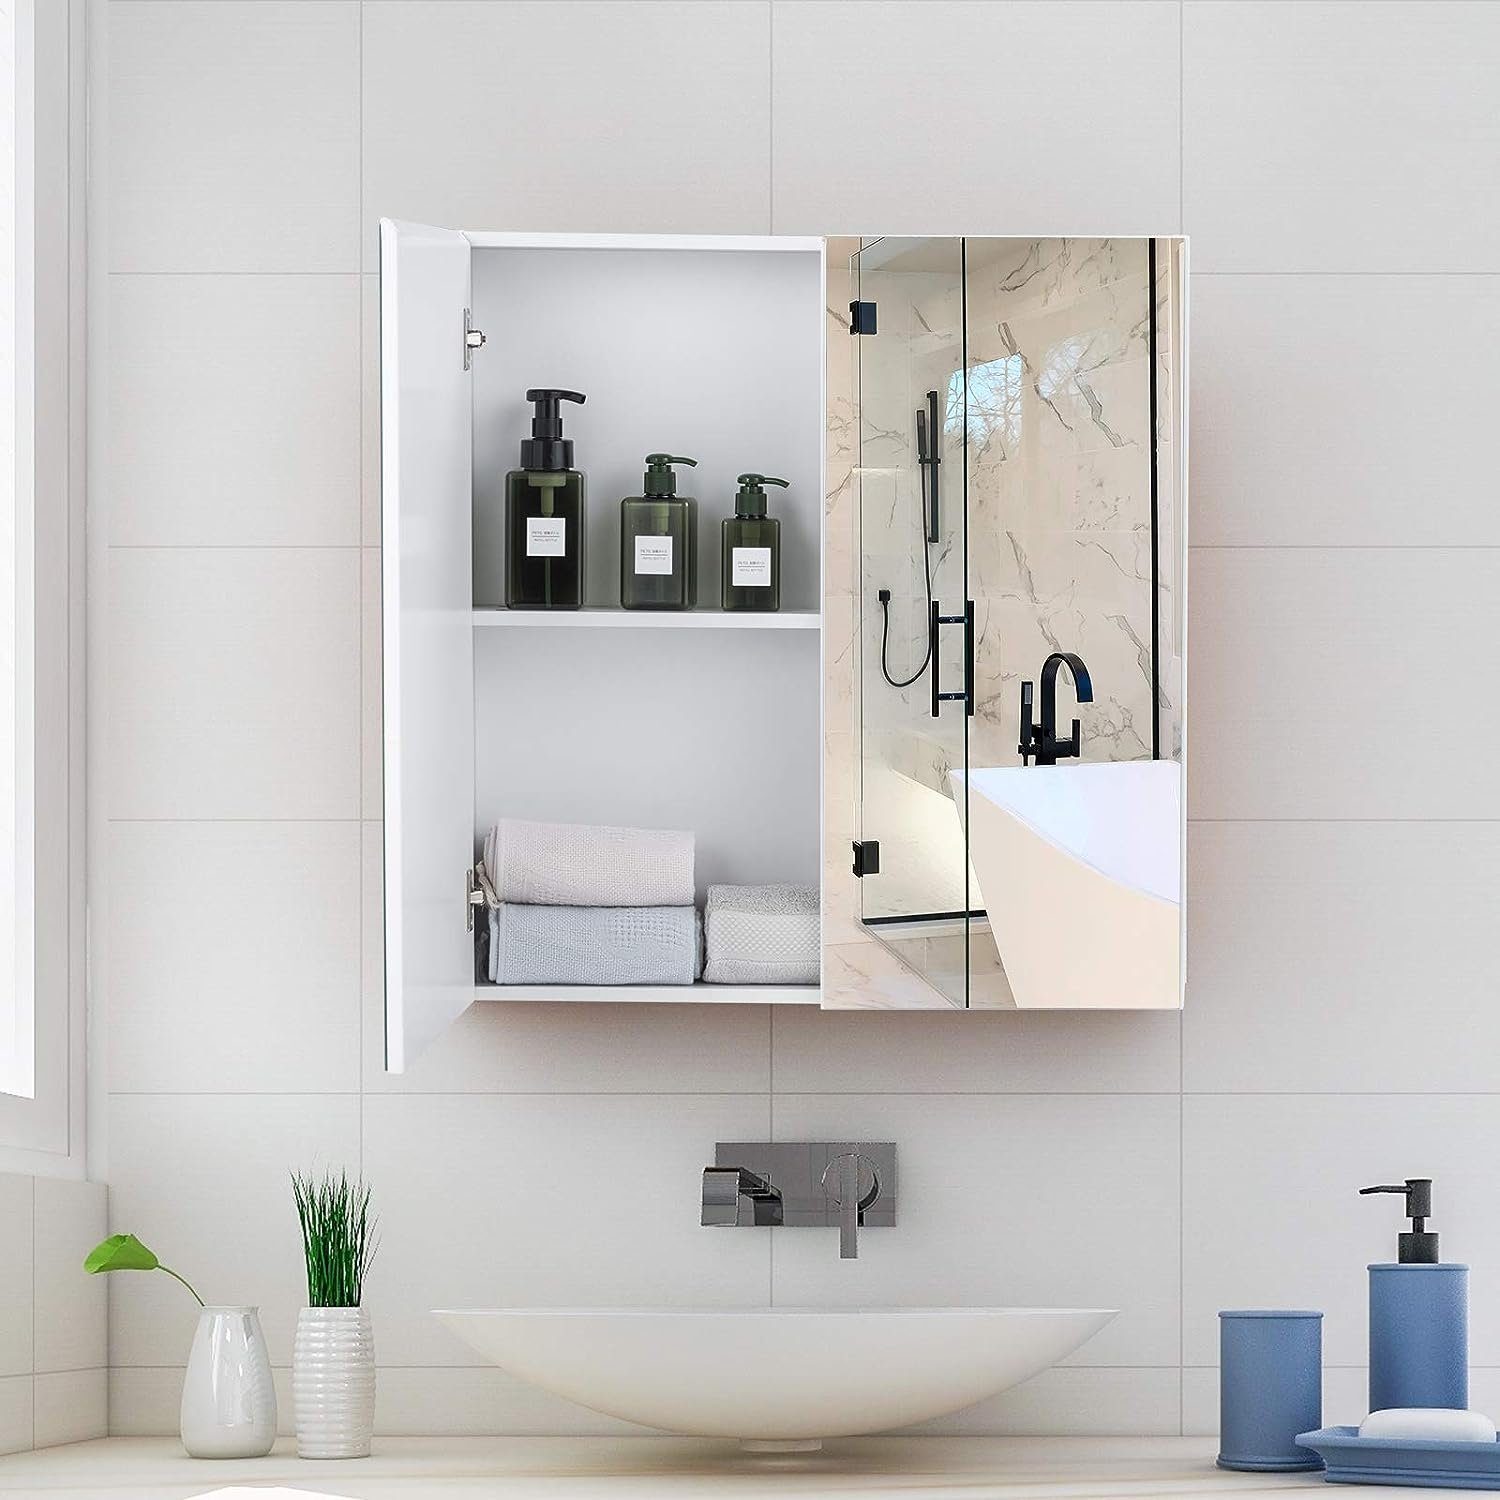 KOMFOTTEU Badezimmerspiegelschrank Spiegelschrank 11,3 mit 65 x 62 Türen, cm x 2